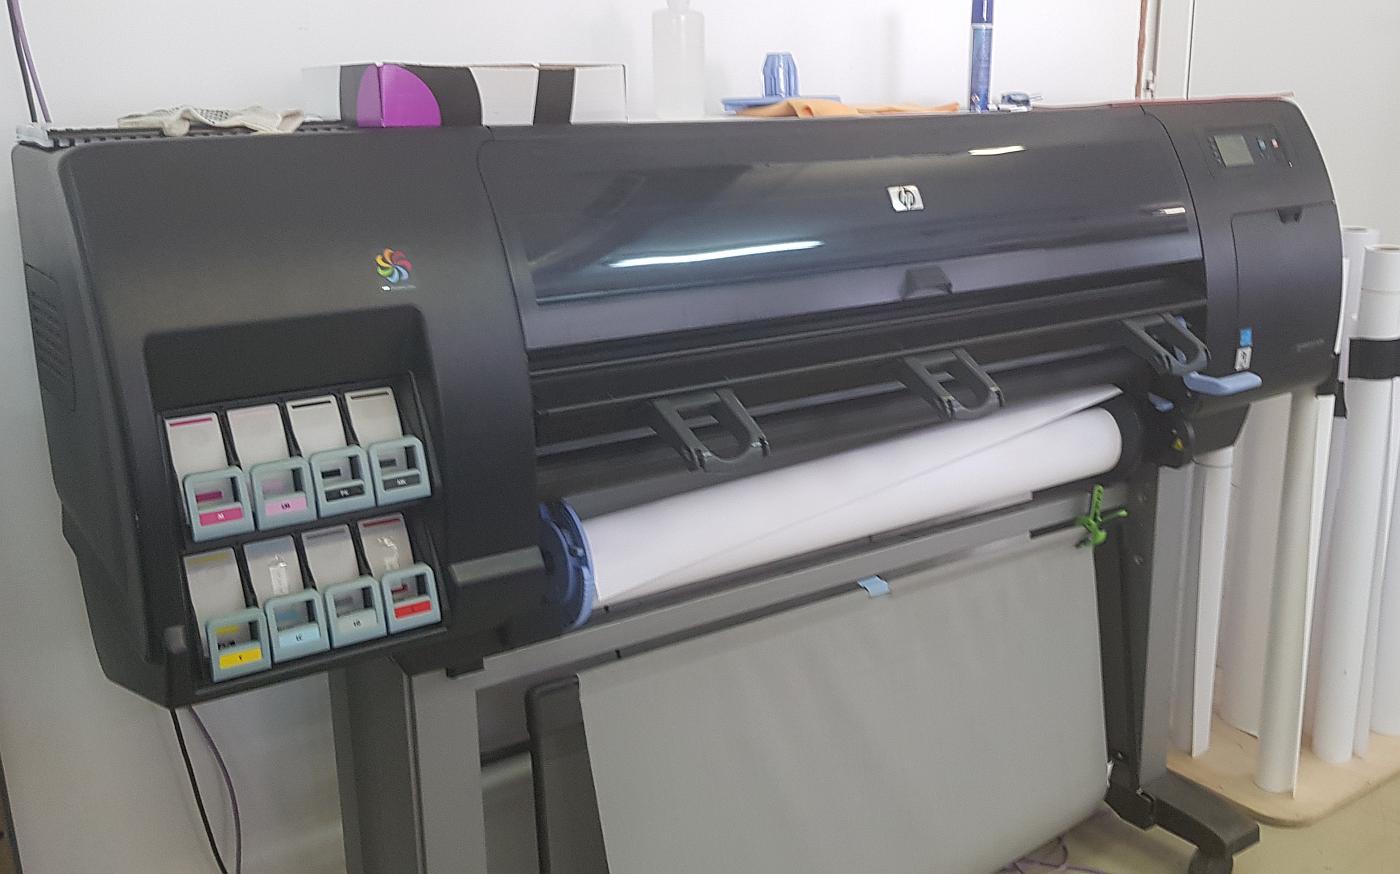 Помимо ЦПМ Kyocera Taskalfa 15000C в типографии имеется внушительный парк печатного оборудования